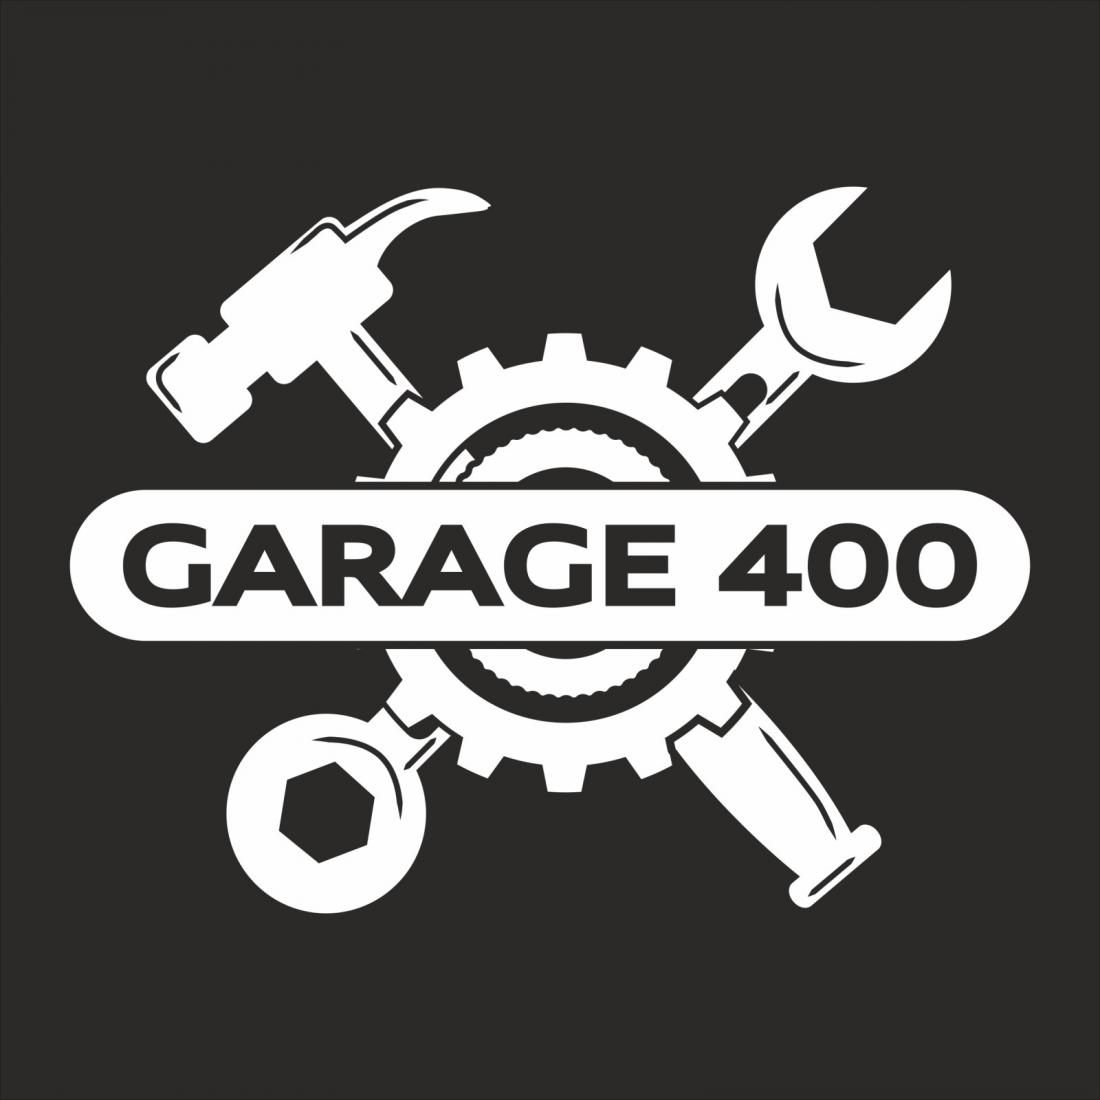 Шиномонтаж авто и мото "Все включено" от 40 р, замена шин на дисках, балансировка от 10 р. на СТО "Garage 400"